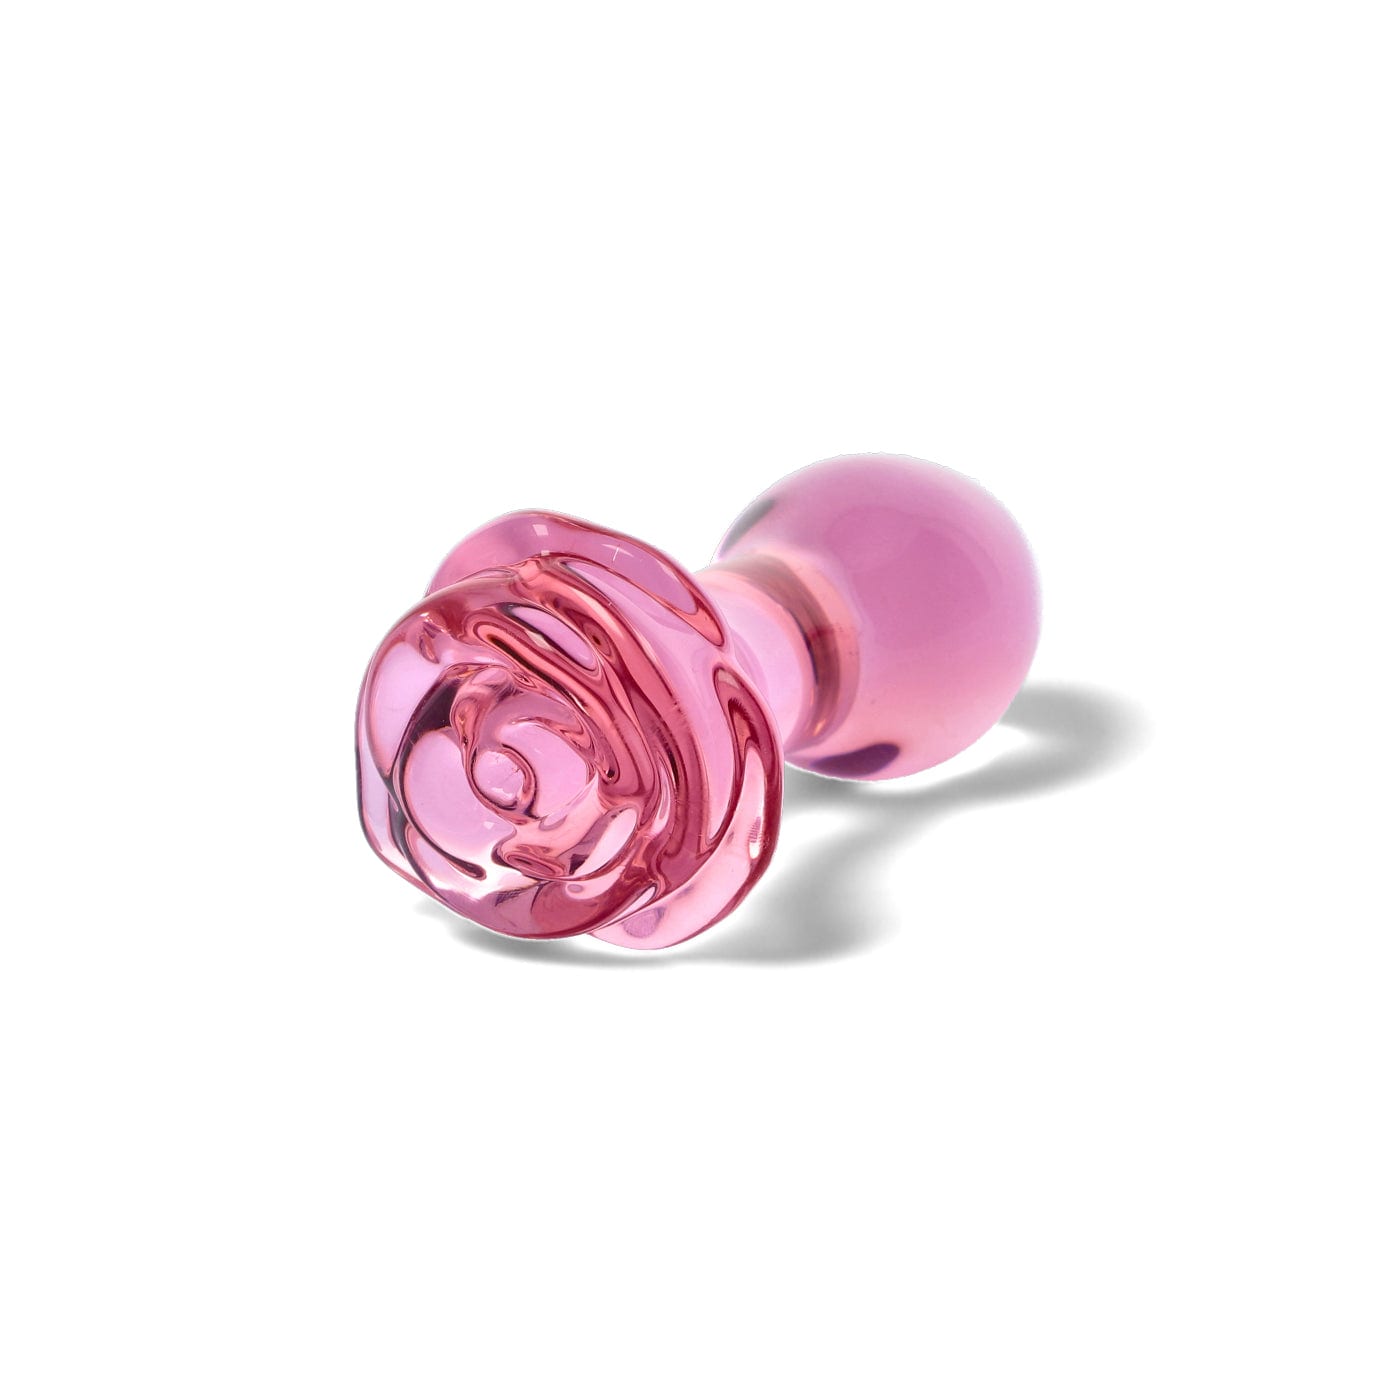 Rosebud rose formet lyserød buttplug i glas bagfra